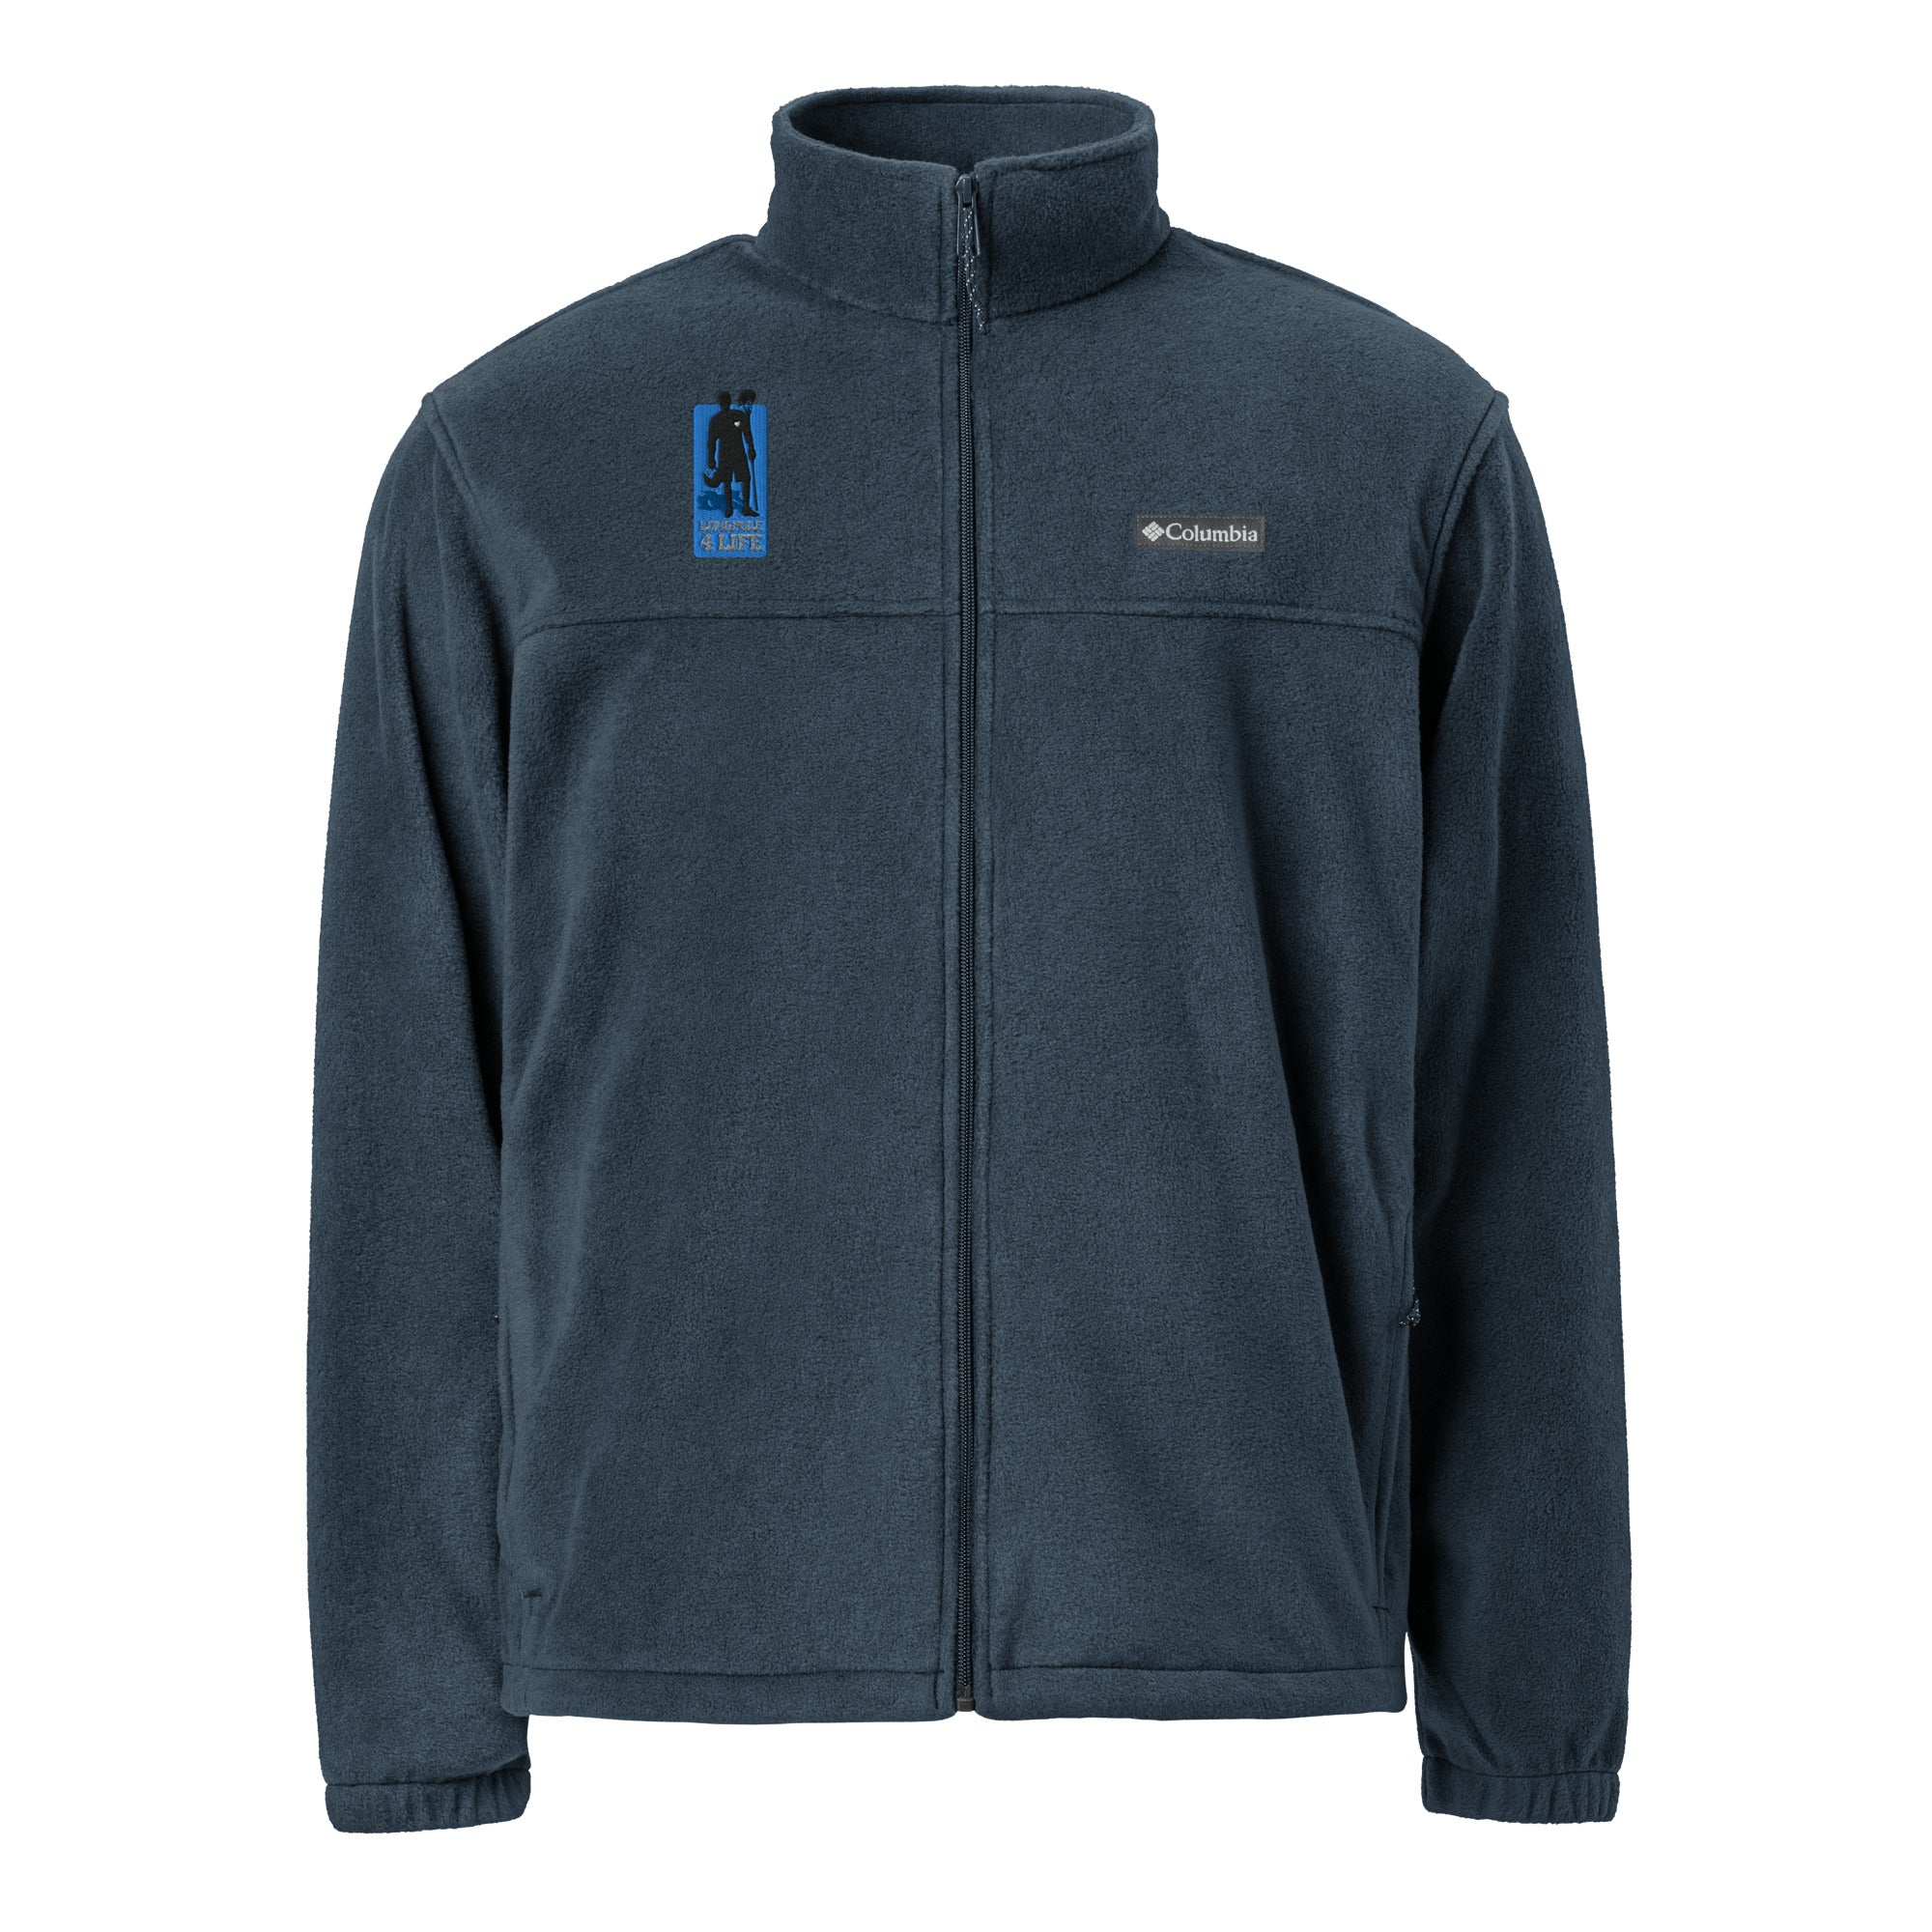 "Longpole 4 Life" Unisex Columbia fleece jacket